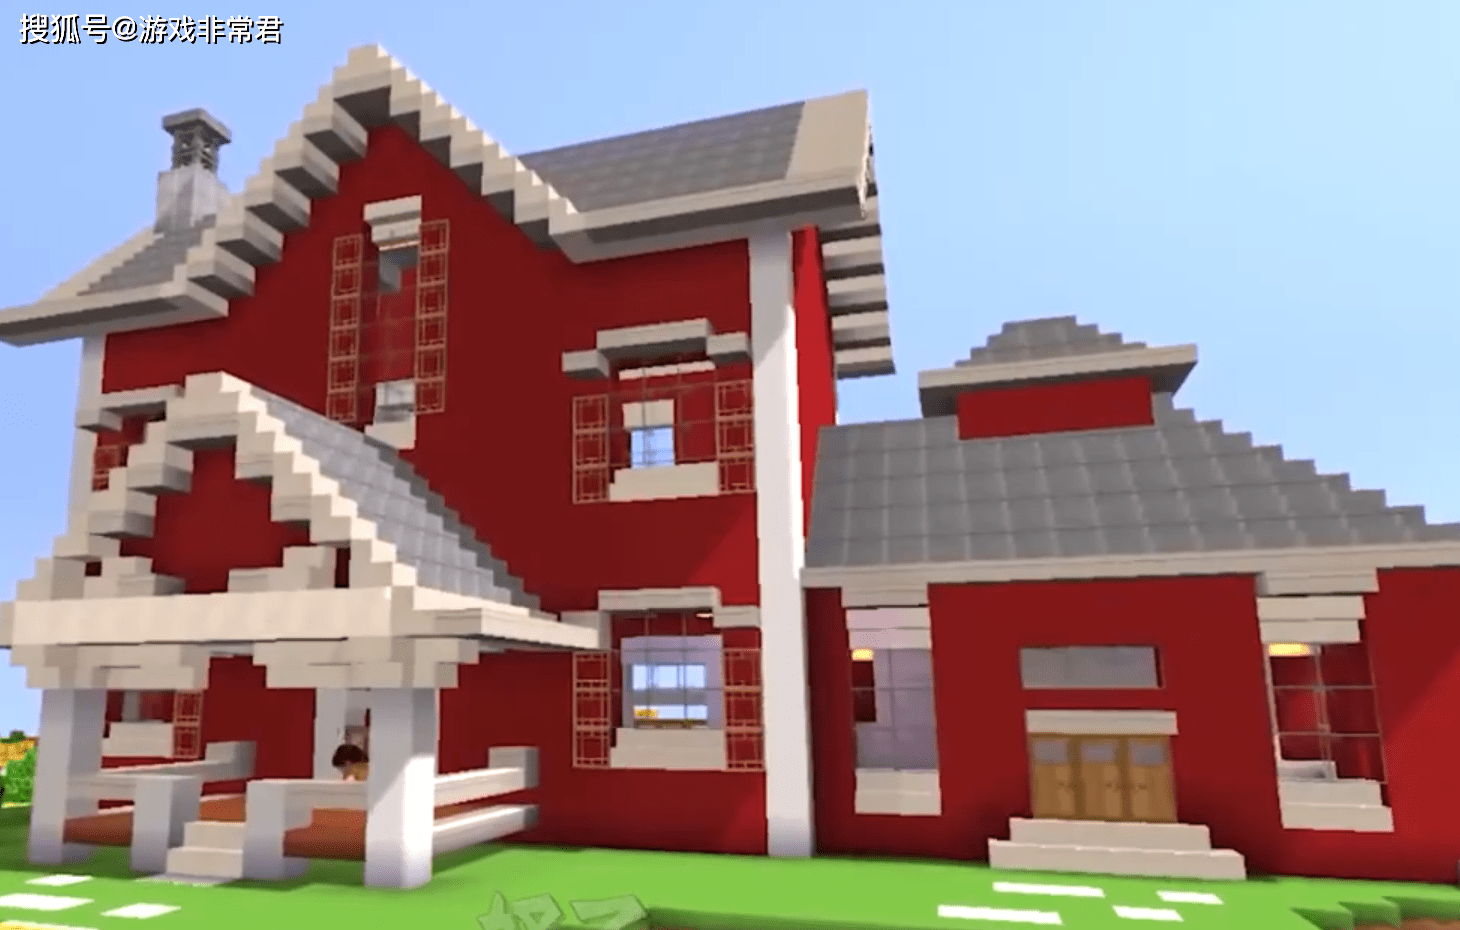 迷你世界:看起来很气派的红砖别墅,新手掌握几点也能搭建出来